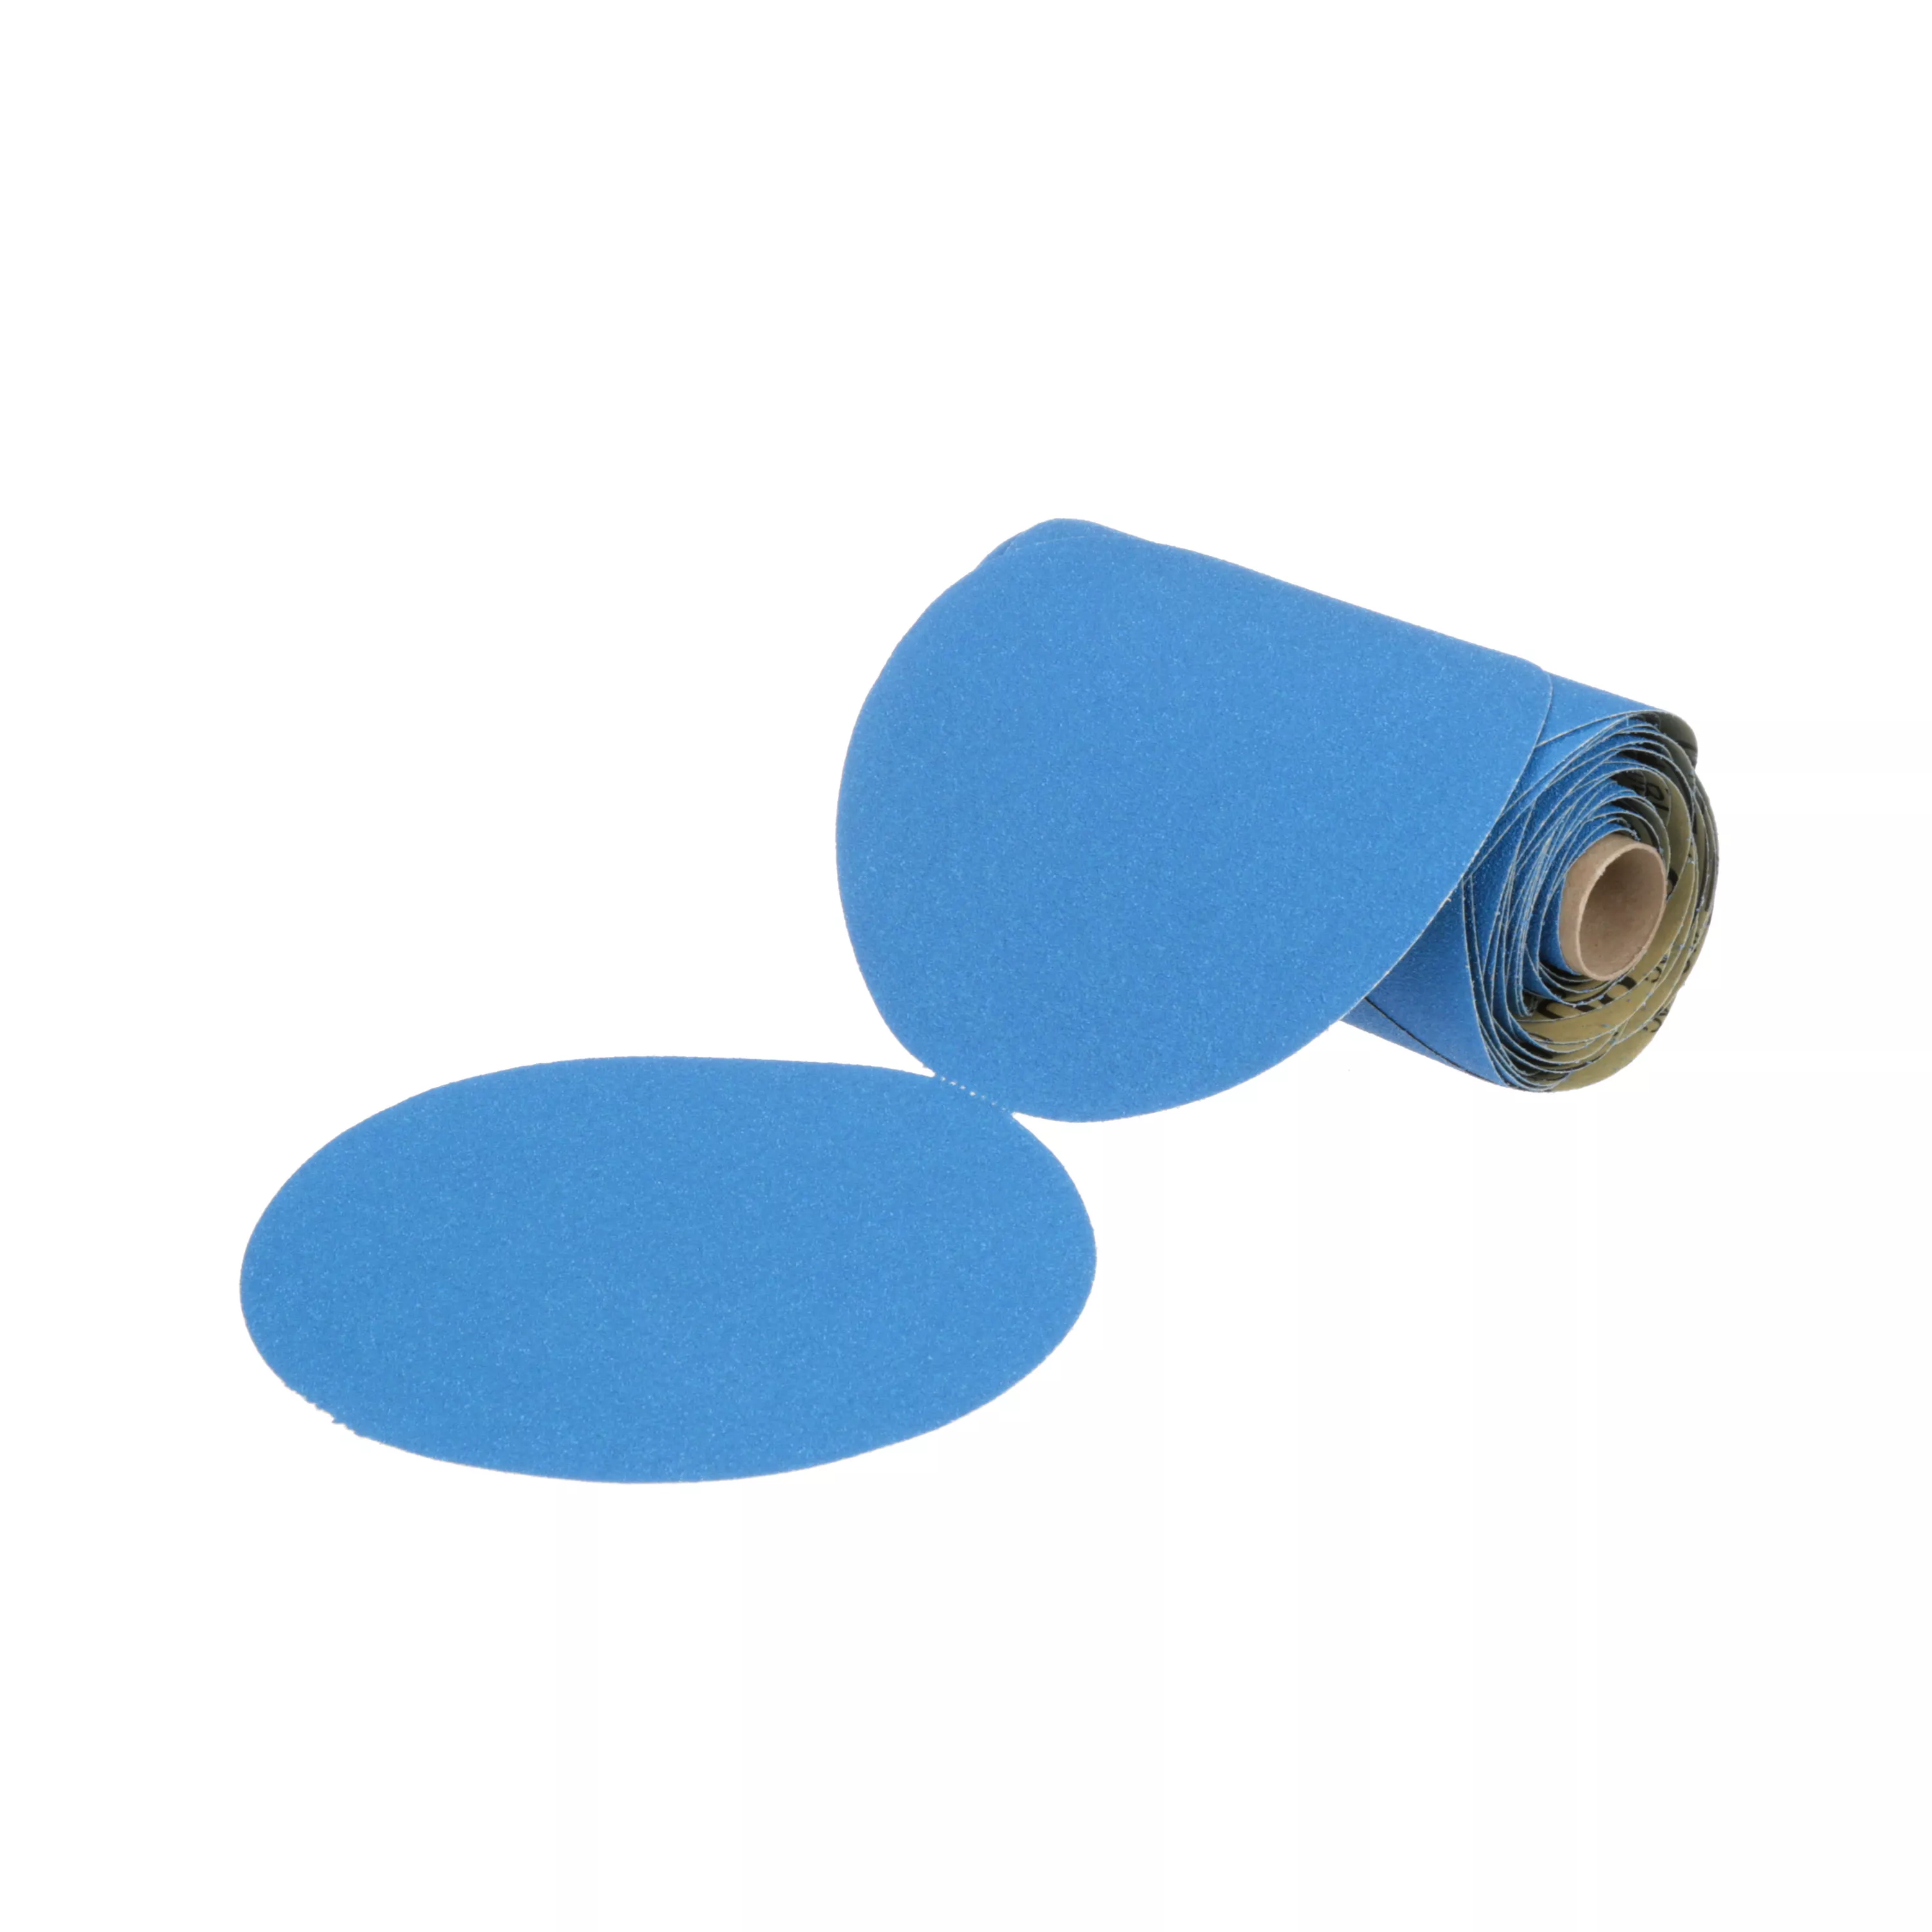 3M™ Stikit™ Blue Abrasive Disc Roll, 36202, 6 in, 80 grade, 50 discs per
roll, 5 rolls per case